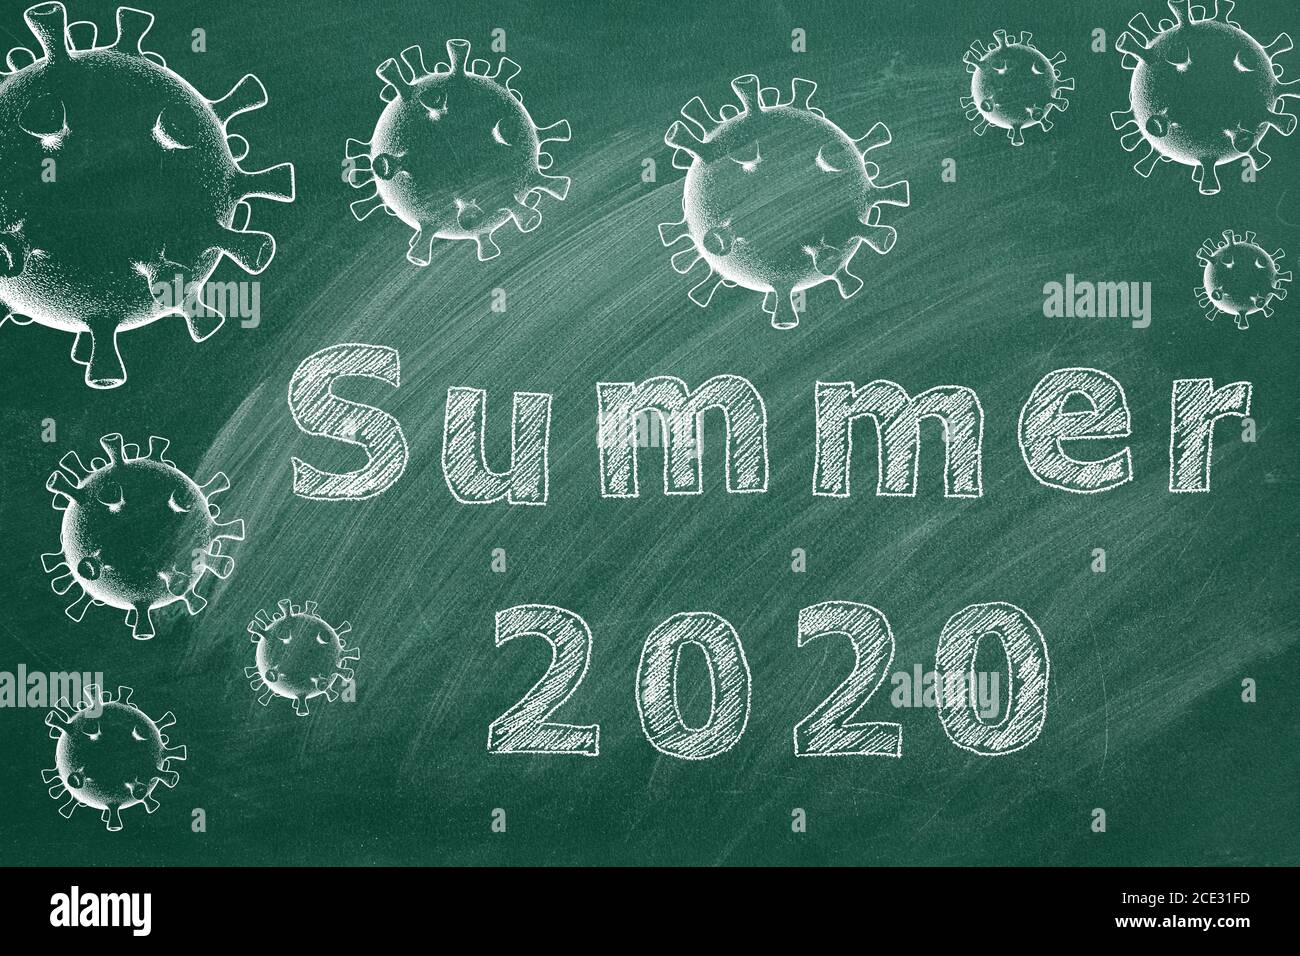 Dibujo manual del texto 'Summer 2020' en la pizarra verde. Concepto Covid-19. Foto de stock